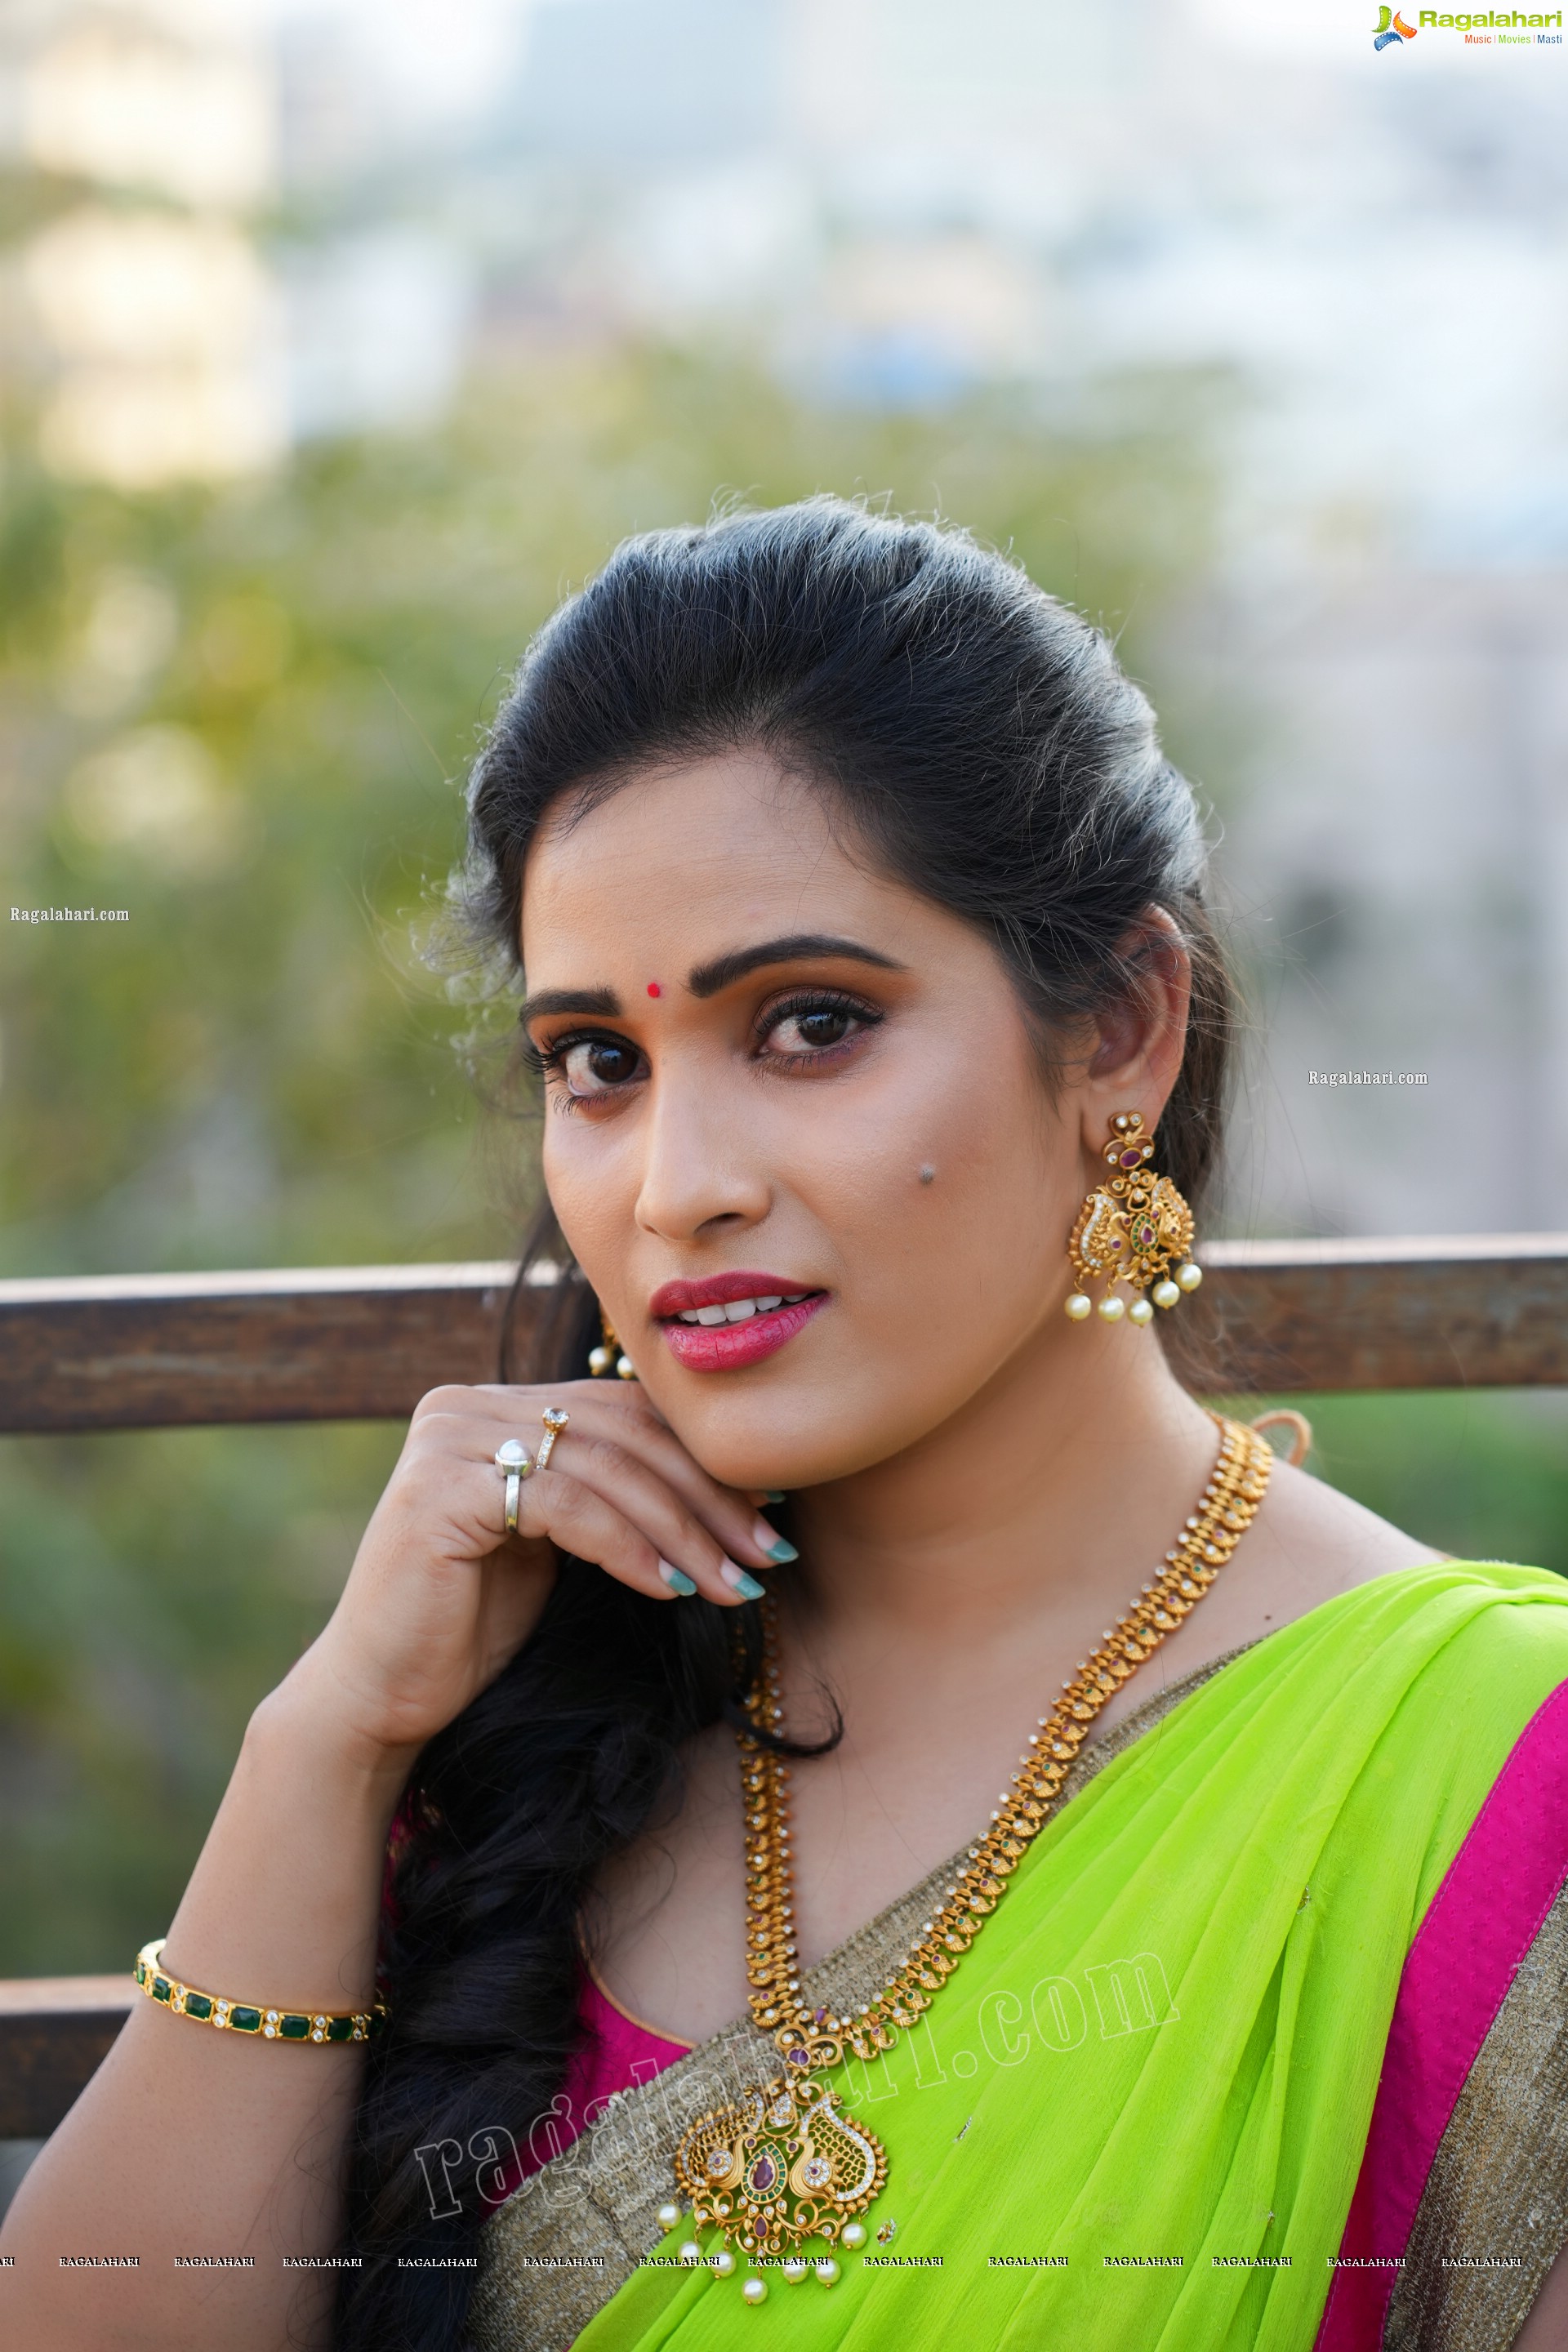 Anusha Parada Ragalahari Exclusive Ugadi Photo Shoot